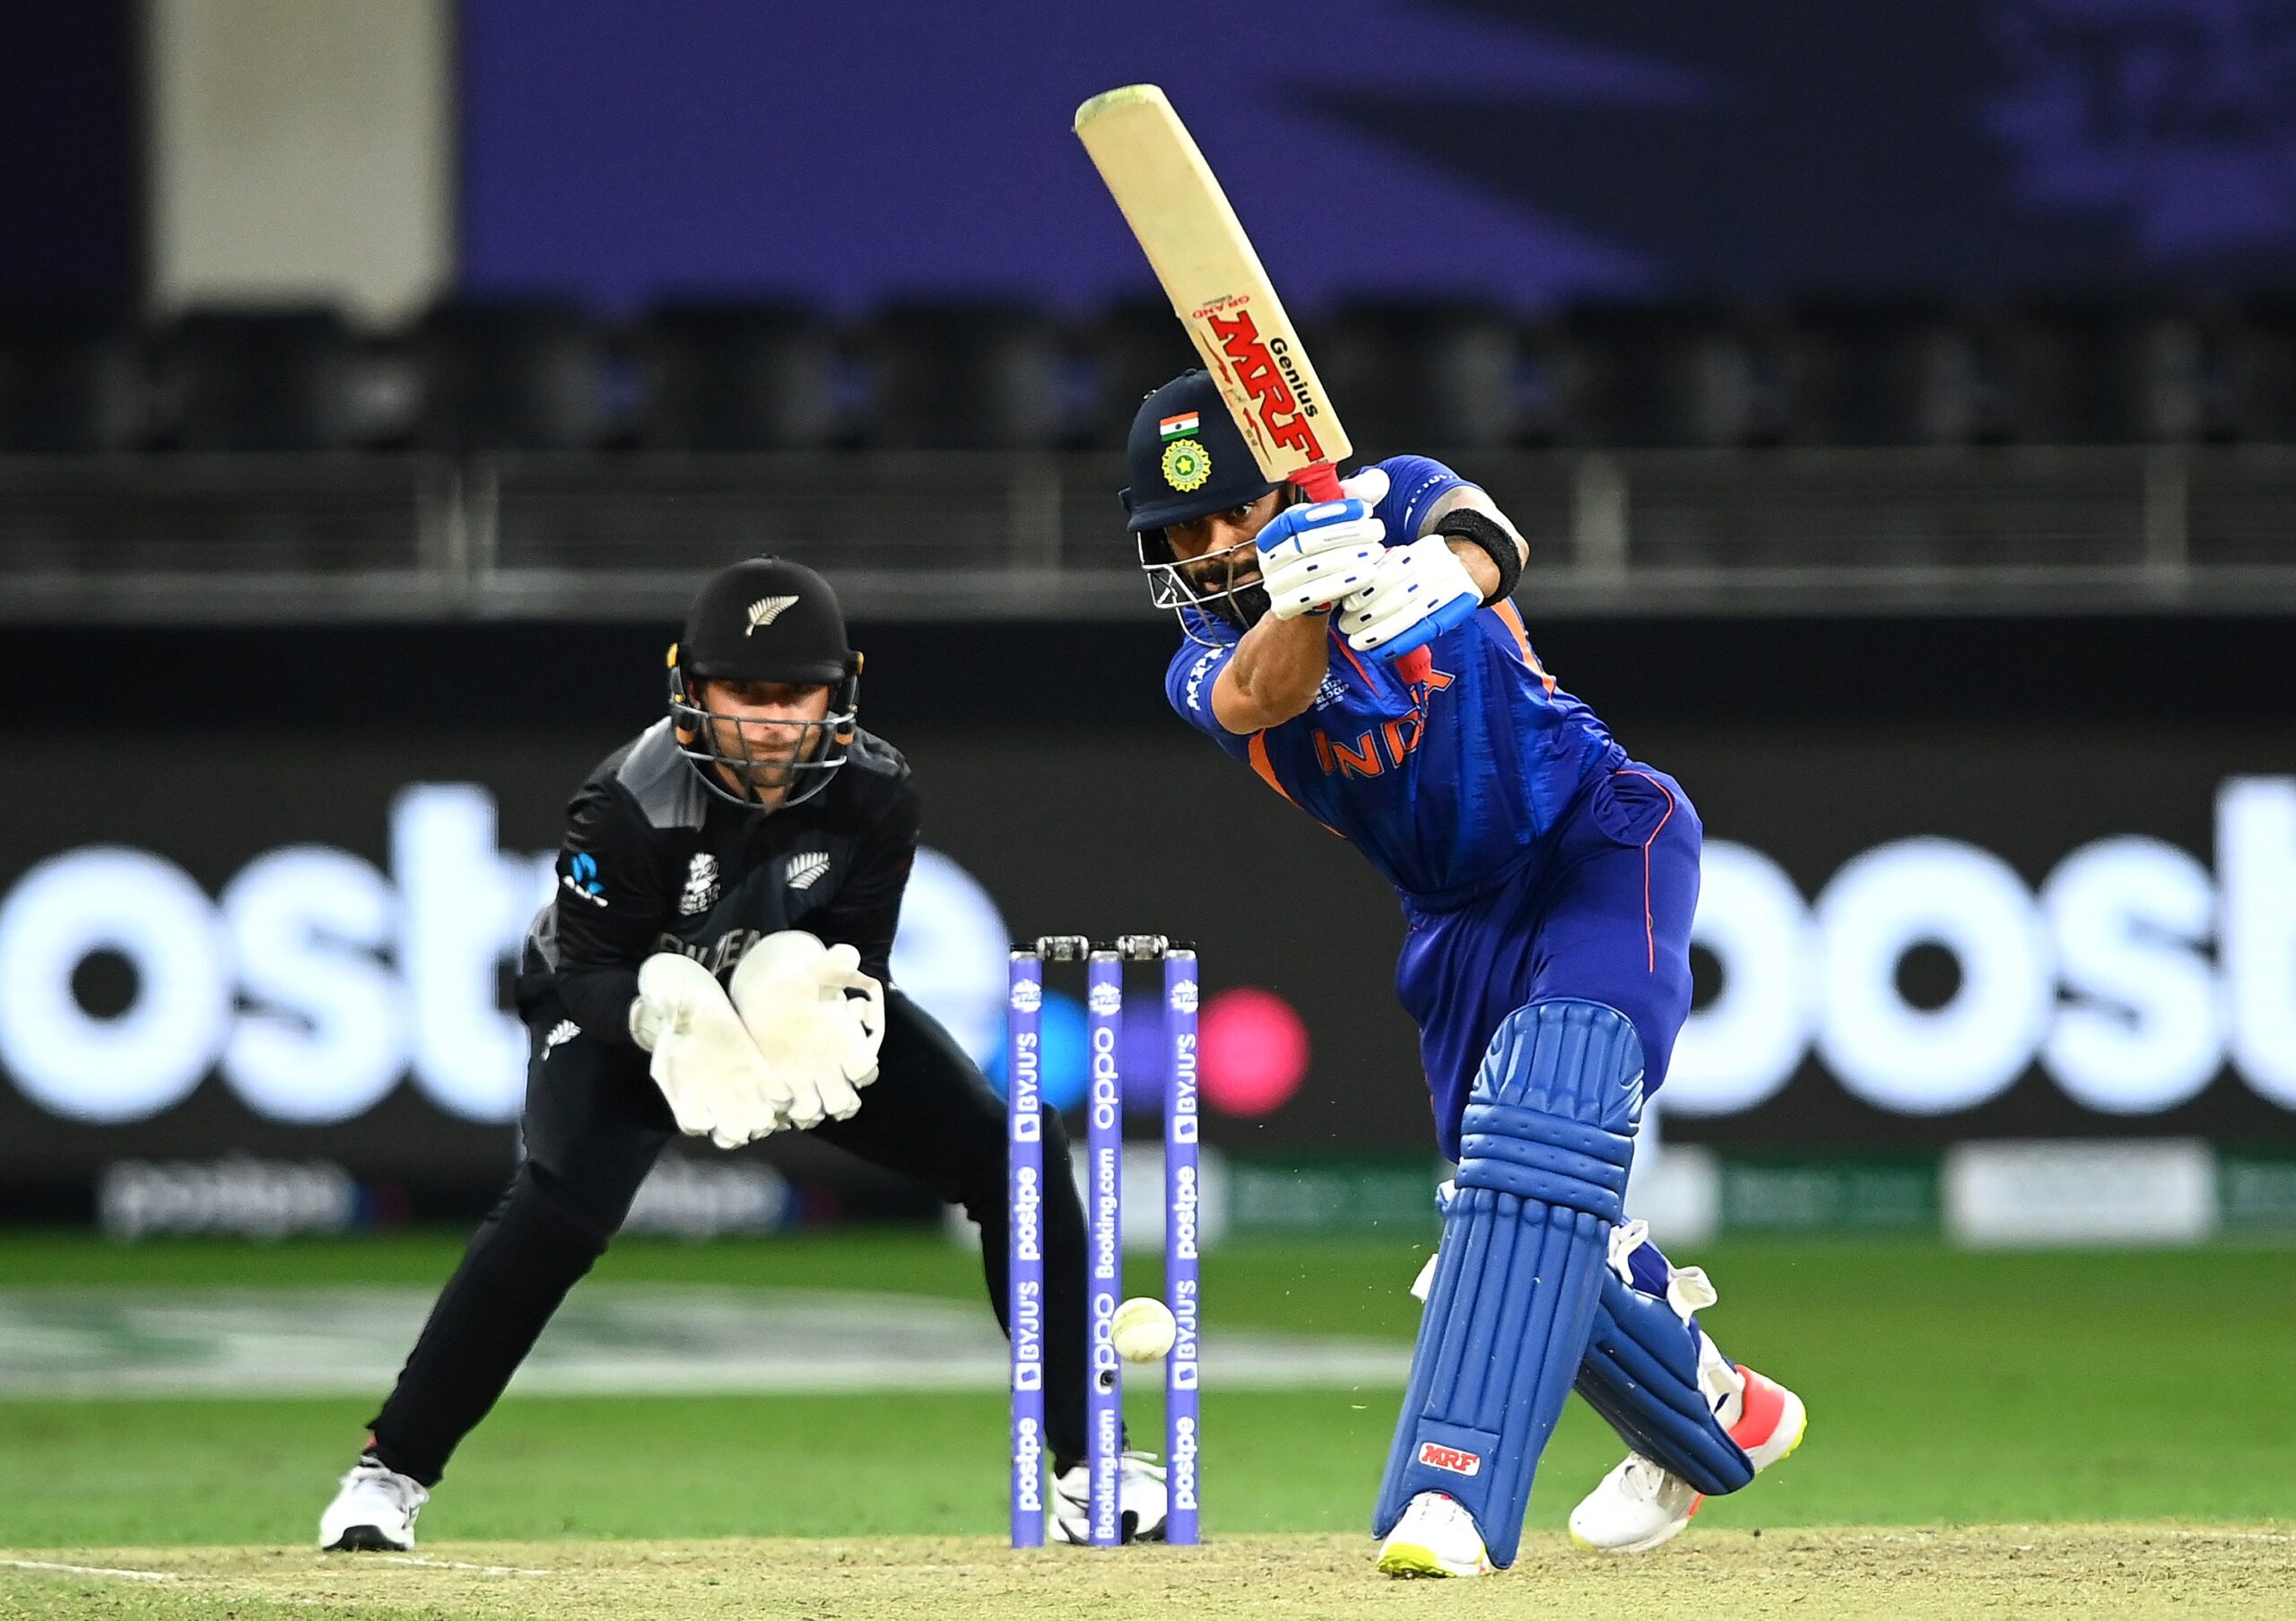 ICC T20 World Cup 2021: न्यूजीलैंड के खिलाफ भारत की शर्मनाक हार, सेमीफाइनल की रेस से लगभग बाहर हुई टीम 3